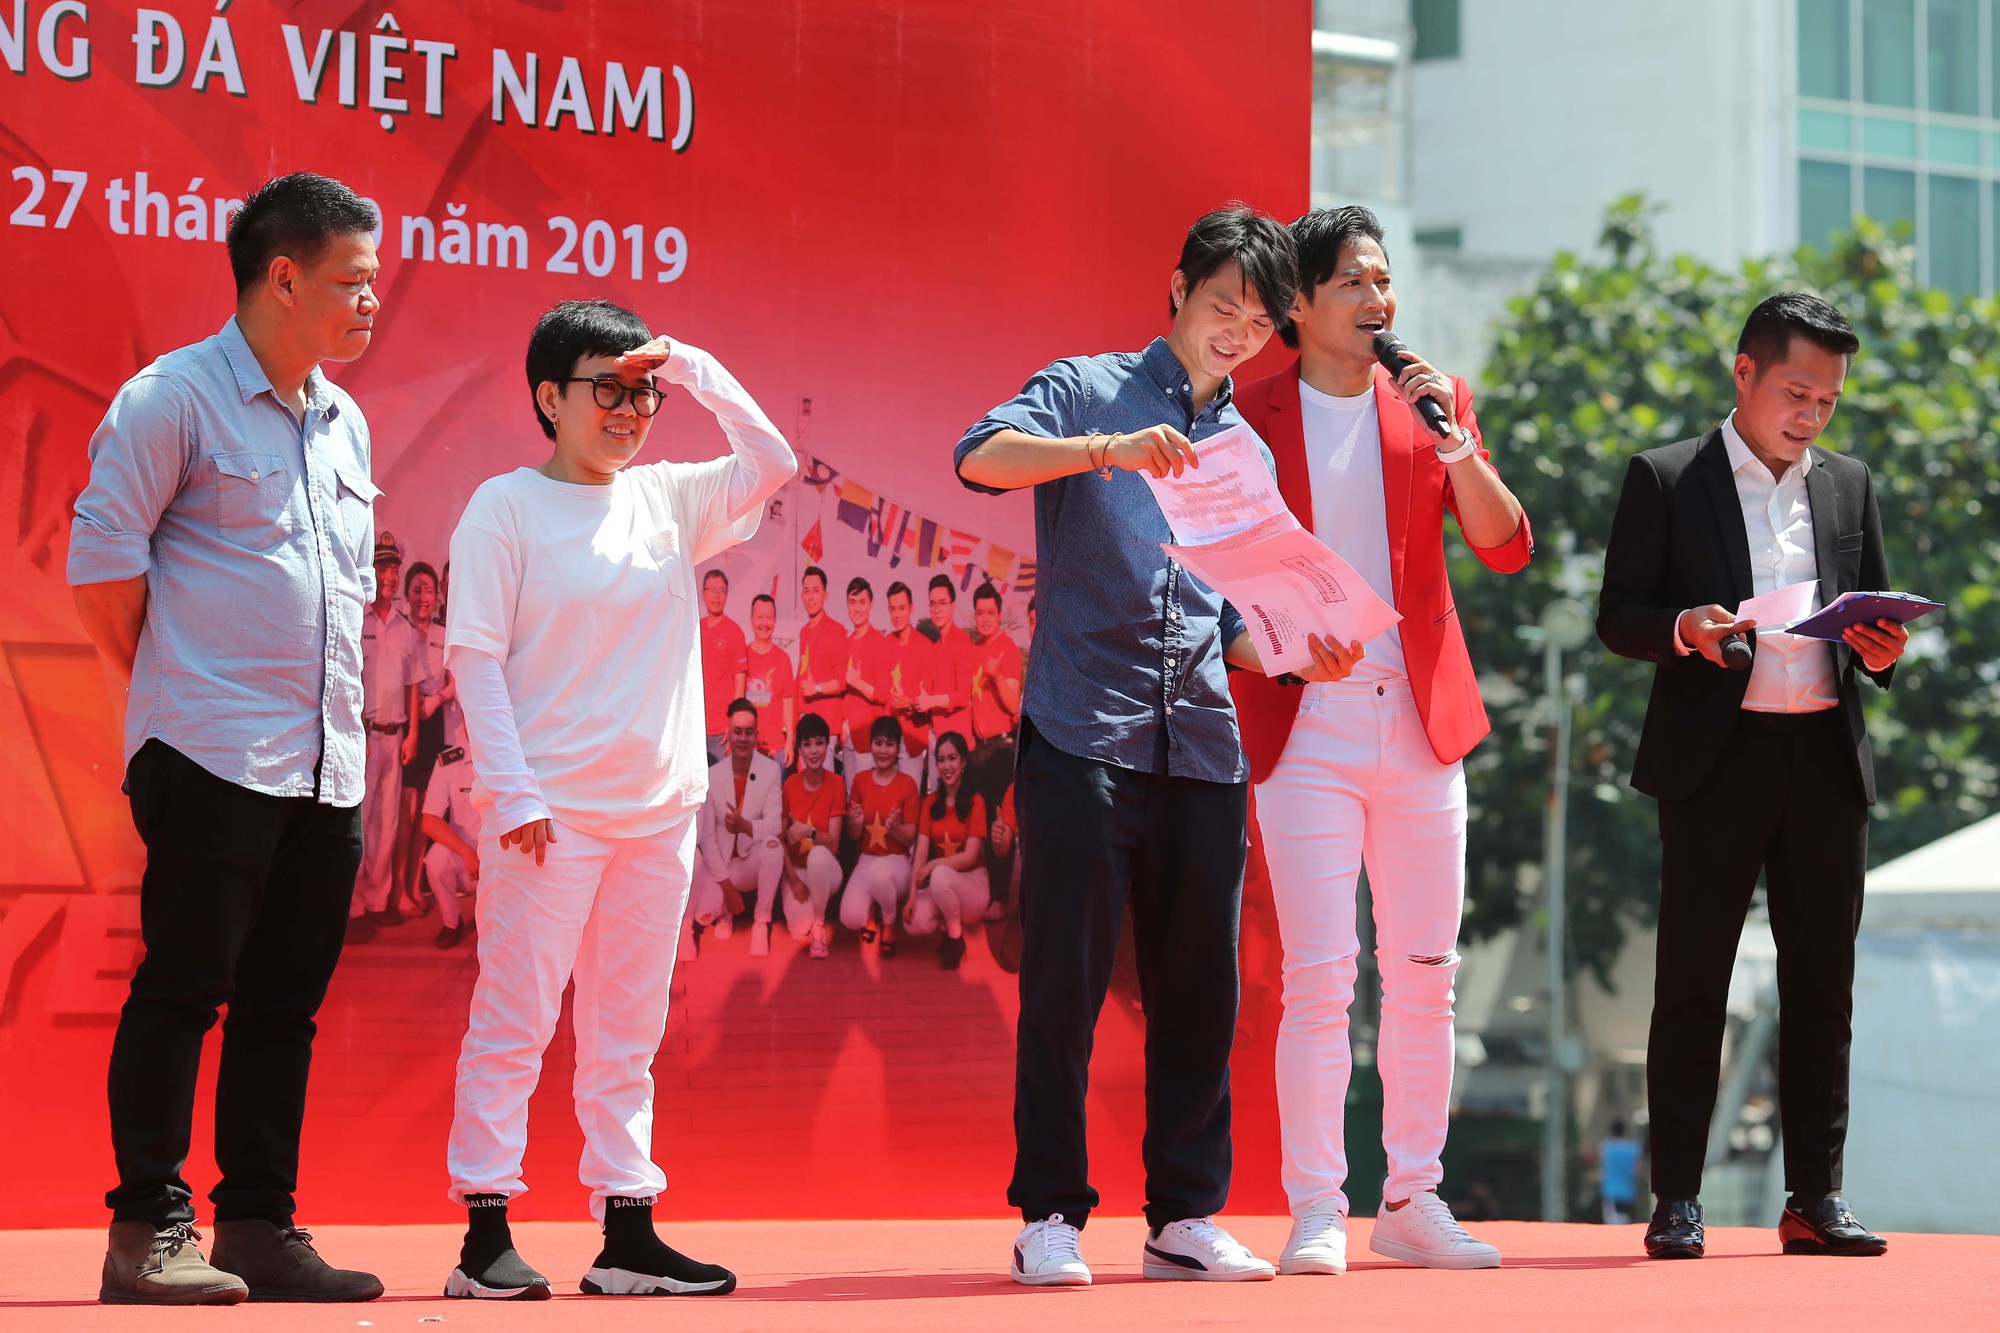 Cầu thủ Tuấn Anh xé niêm phong, công bố nhạc sĩ Võ Thiện Thanh ôm giải 300 triệu đồng - Ảnh 11.